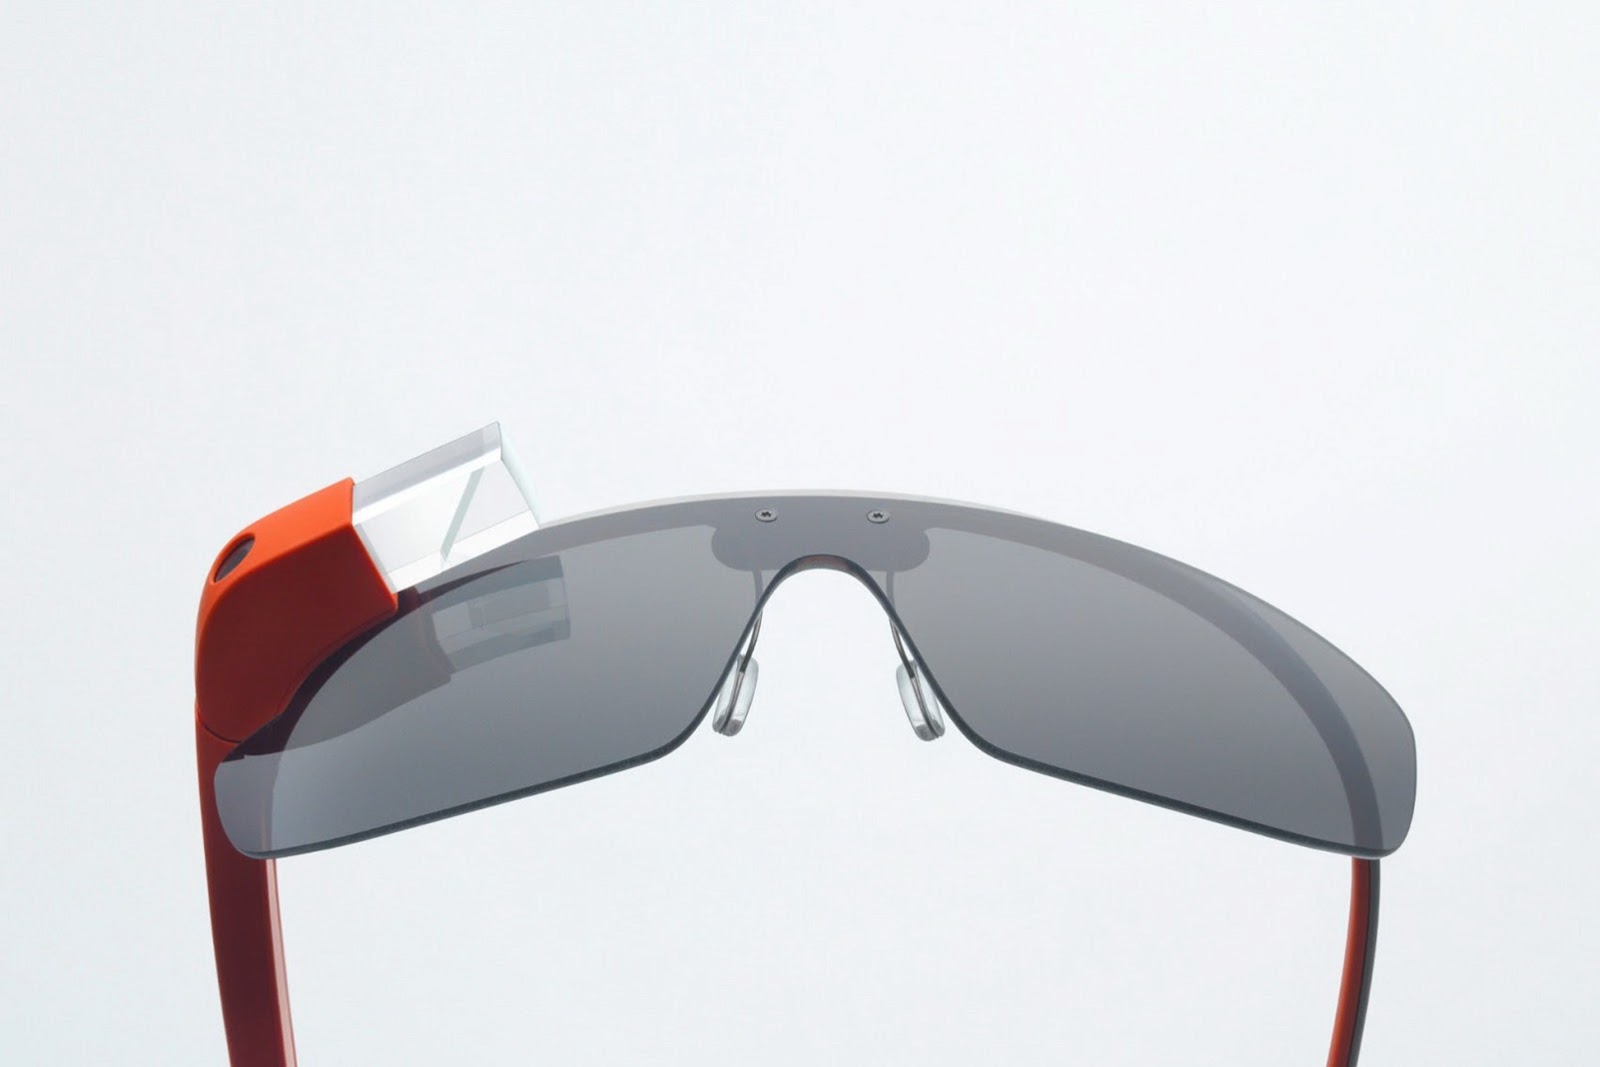 Mercedes-Benz phát triển hệ thống dẫn đường tích hợp Google Glass 1